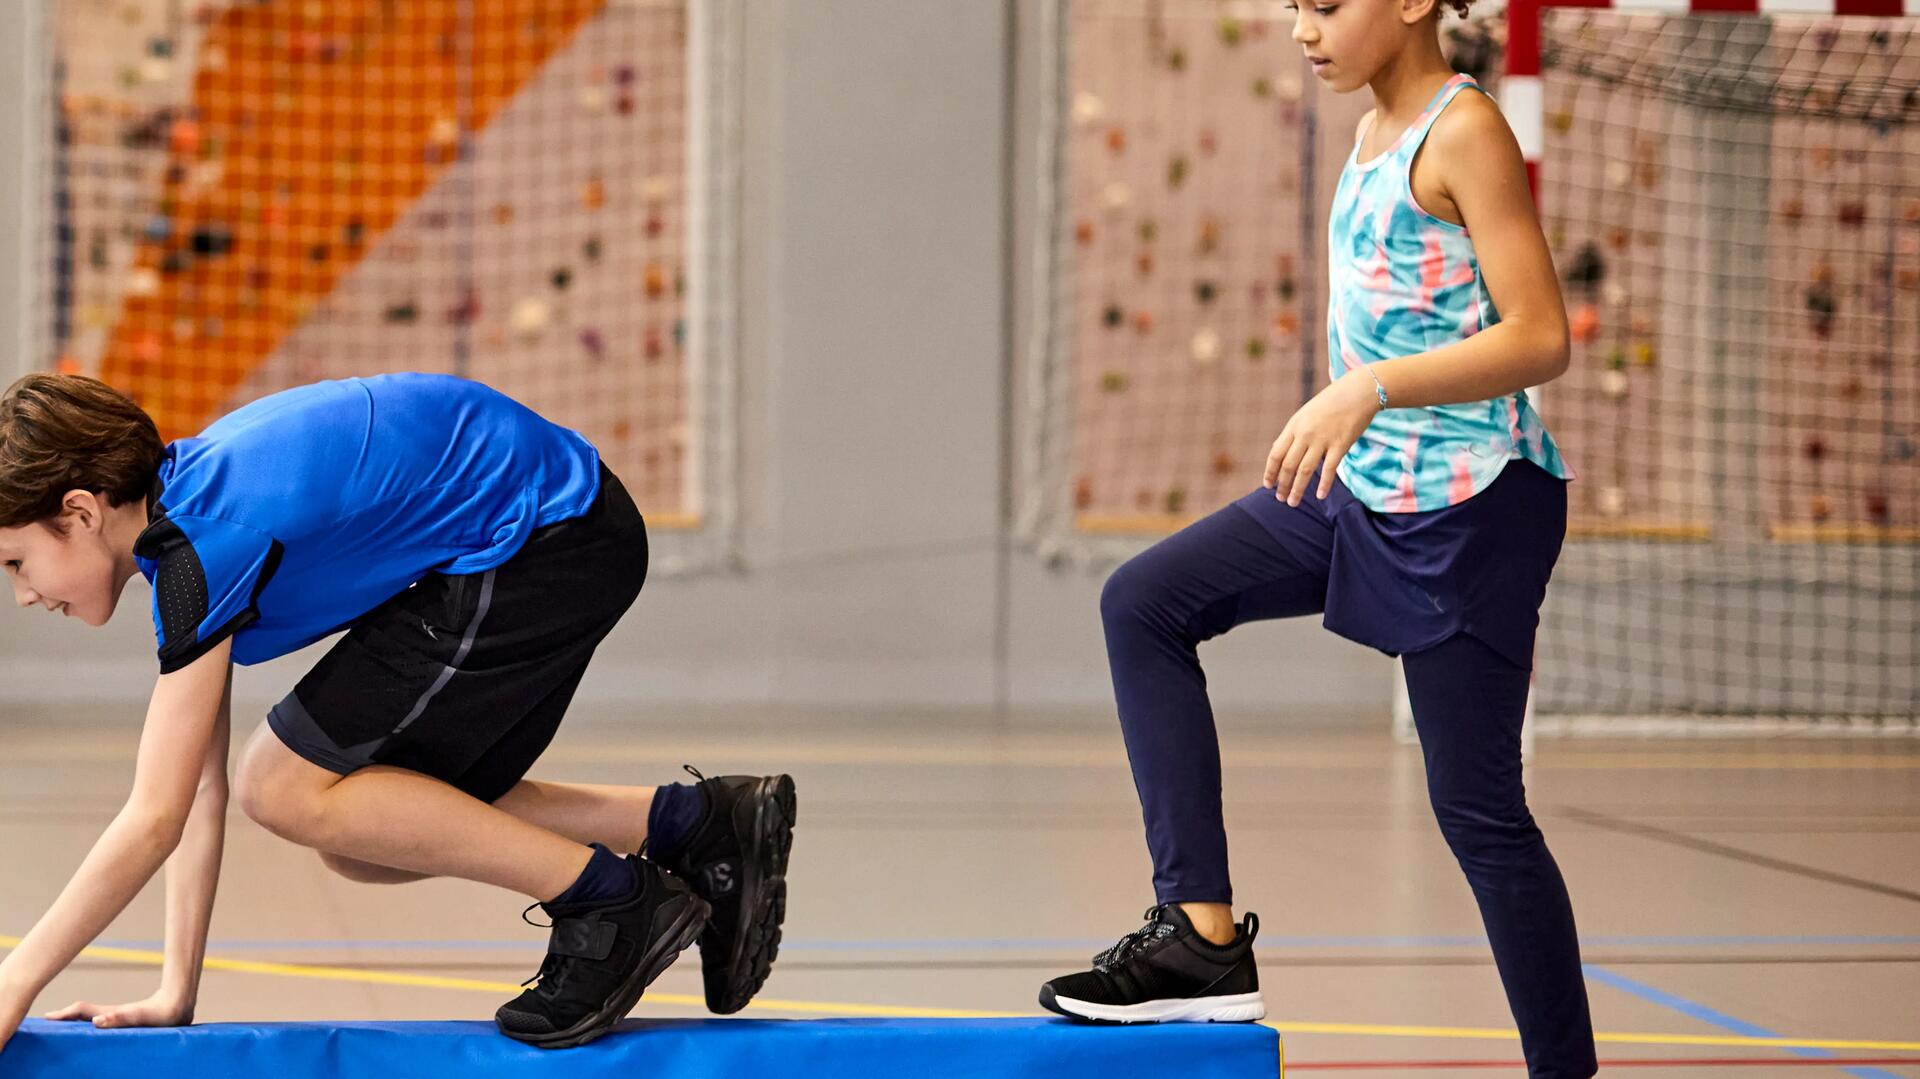 dziewczynka i chłopiec w odzieży gimnastycznej ćwiczący na sali treningowej